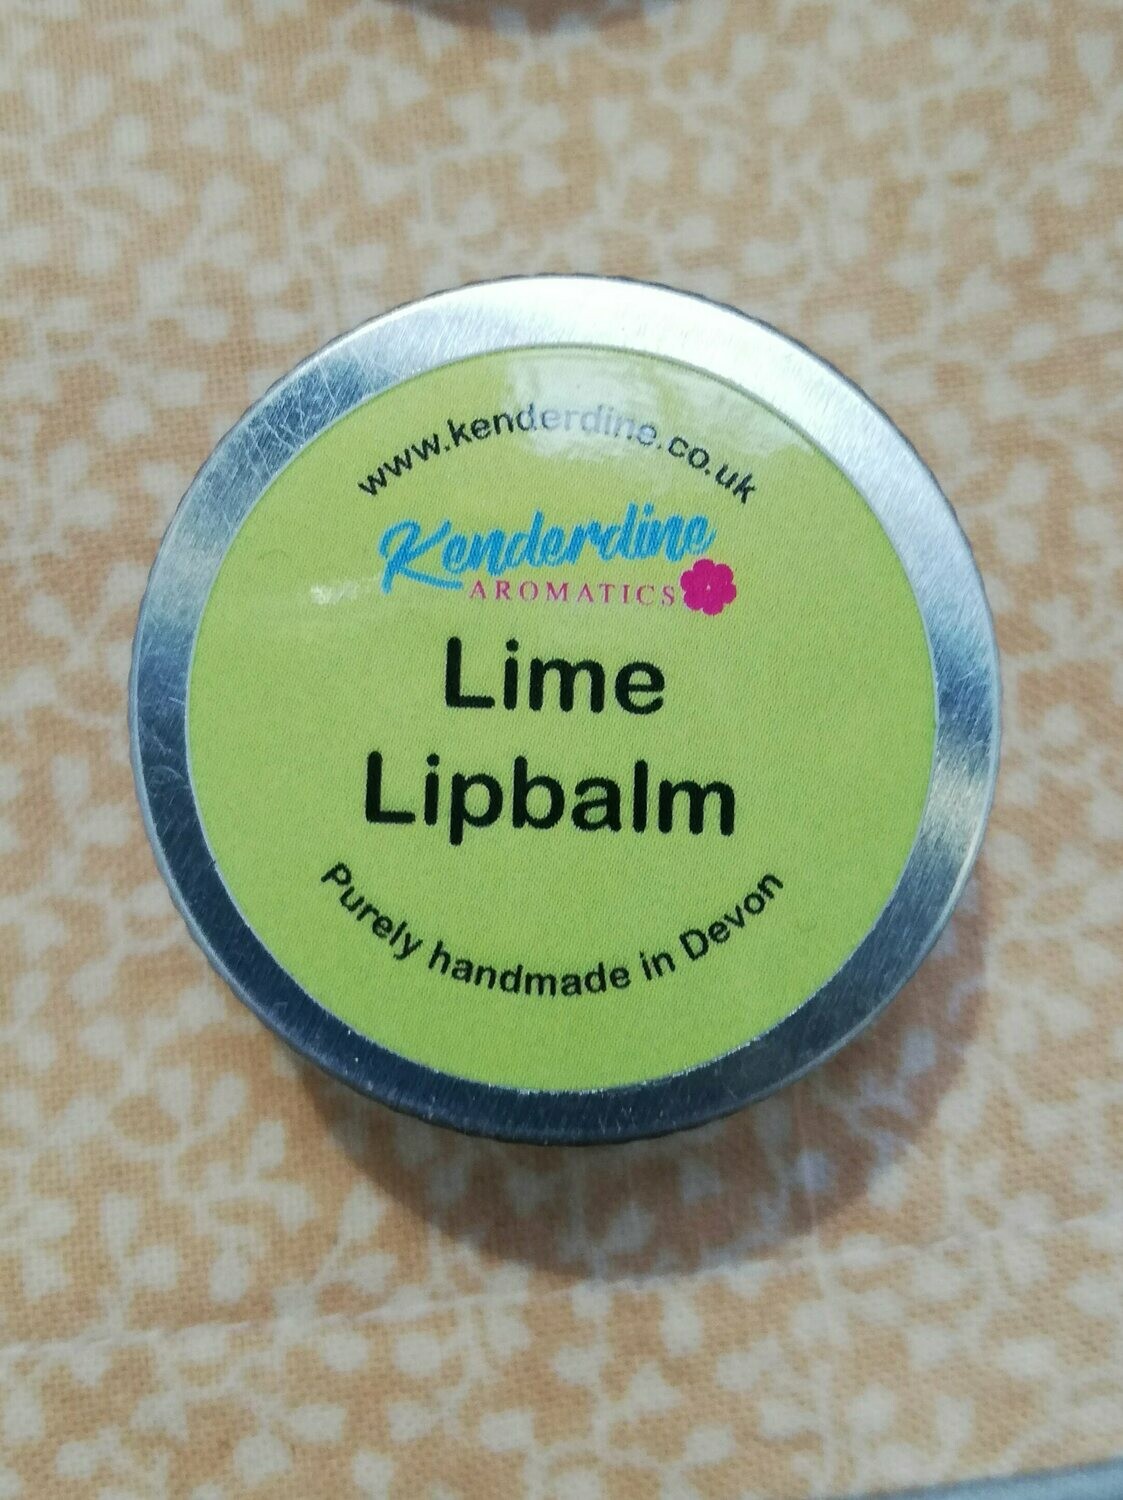 Lime lip balm